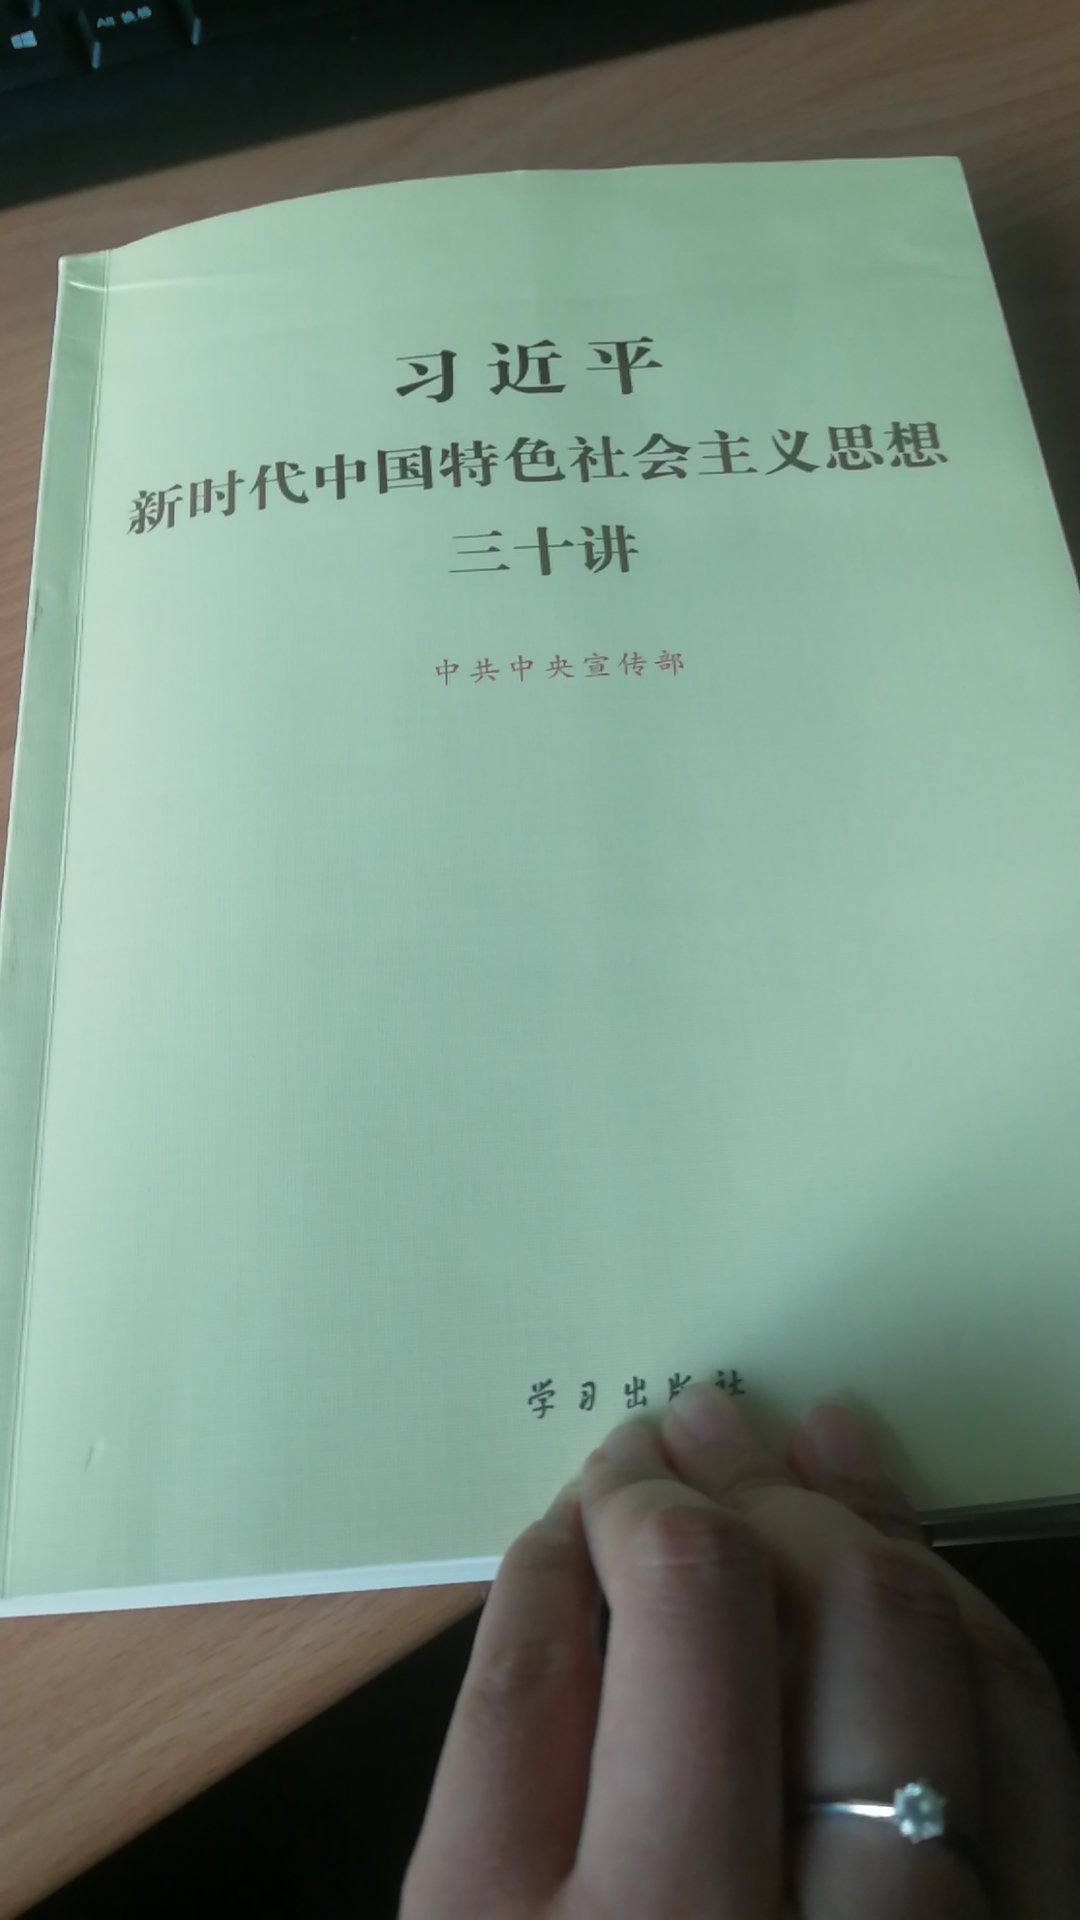 对了解新时代中国特色社会主义思想有着极大的帮助，这本书言简意赅，语言通俗易懂。